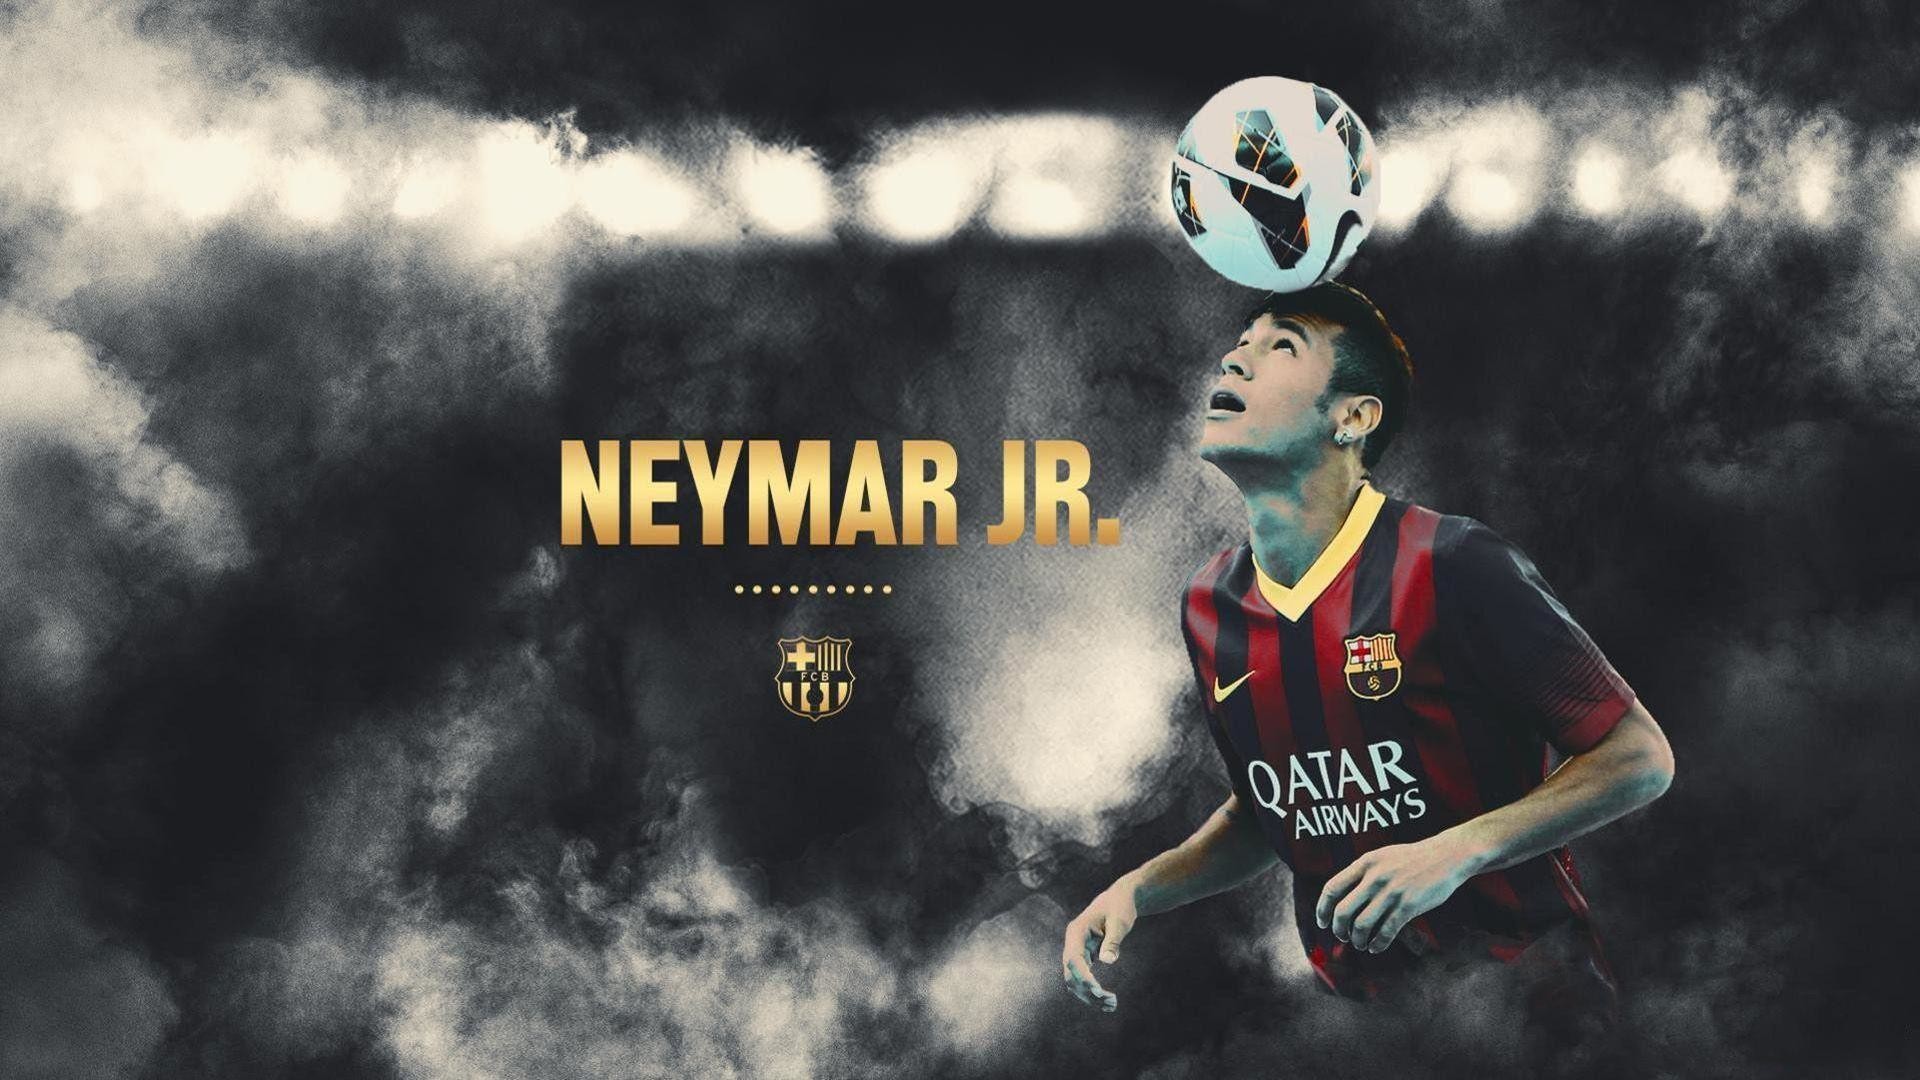 Cool Neymar Wallpapers HD | PixelsTalk.Net